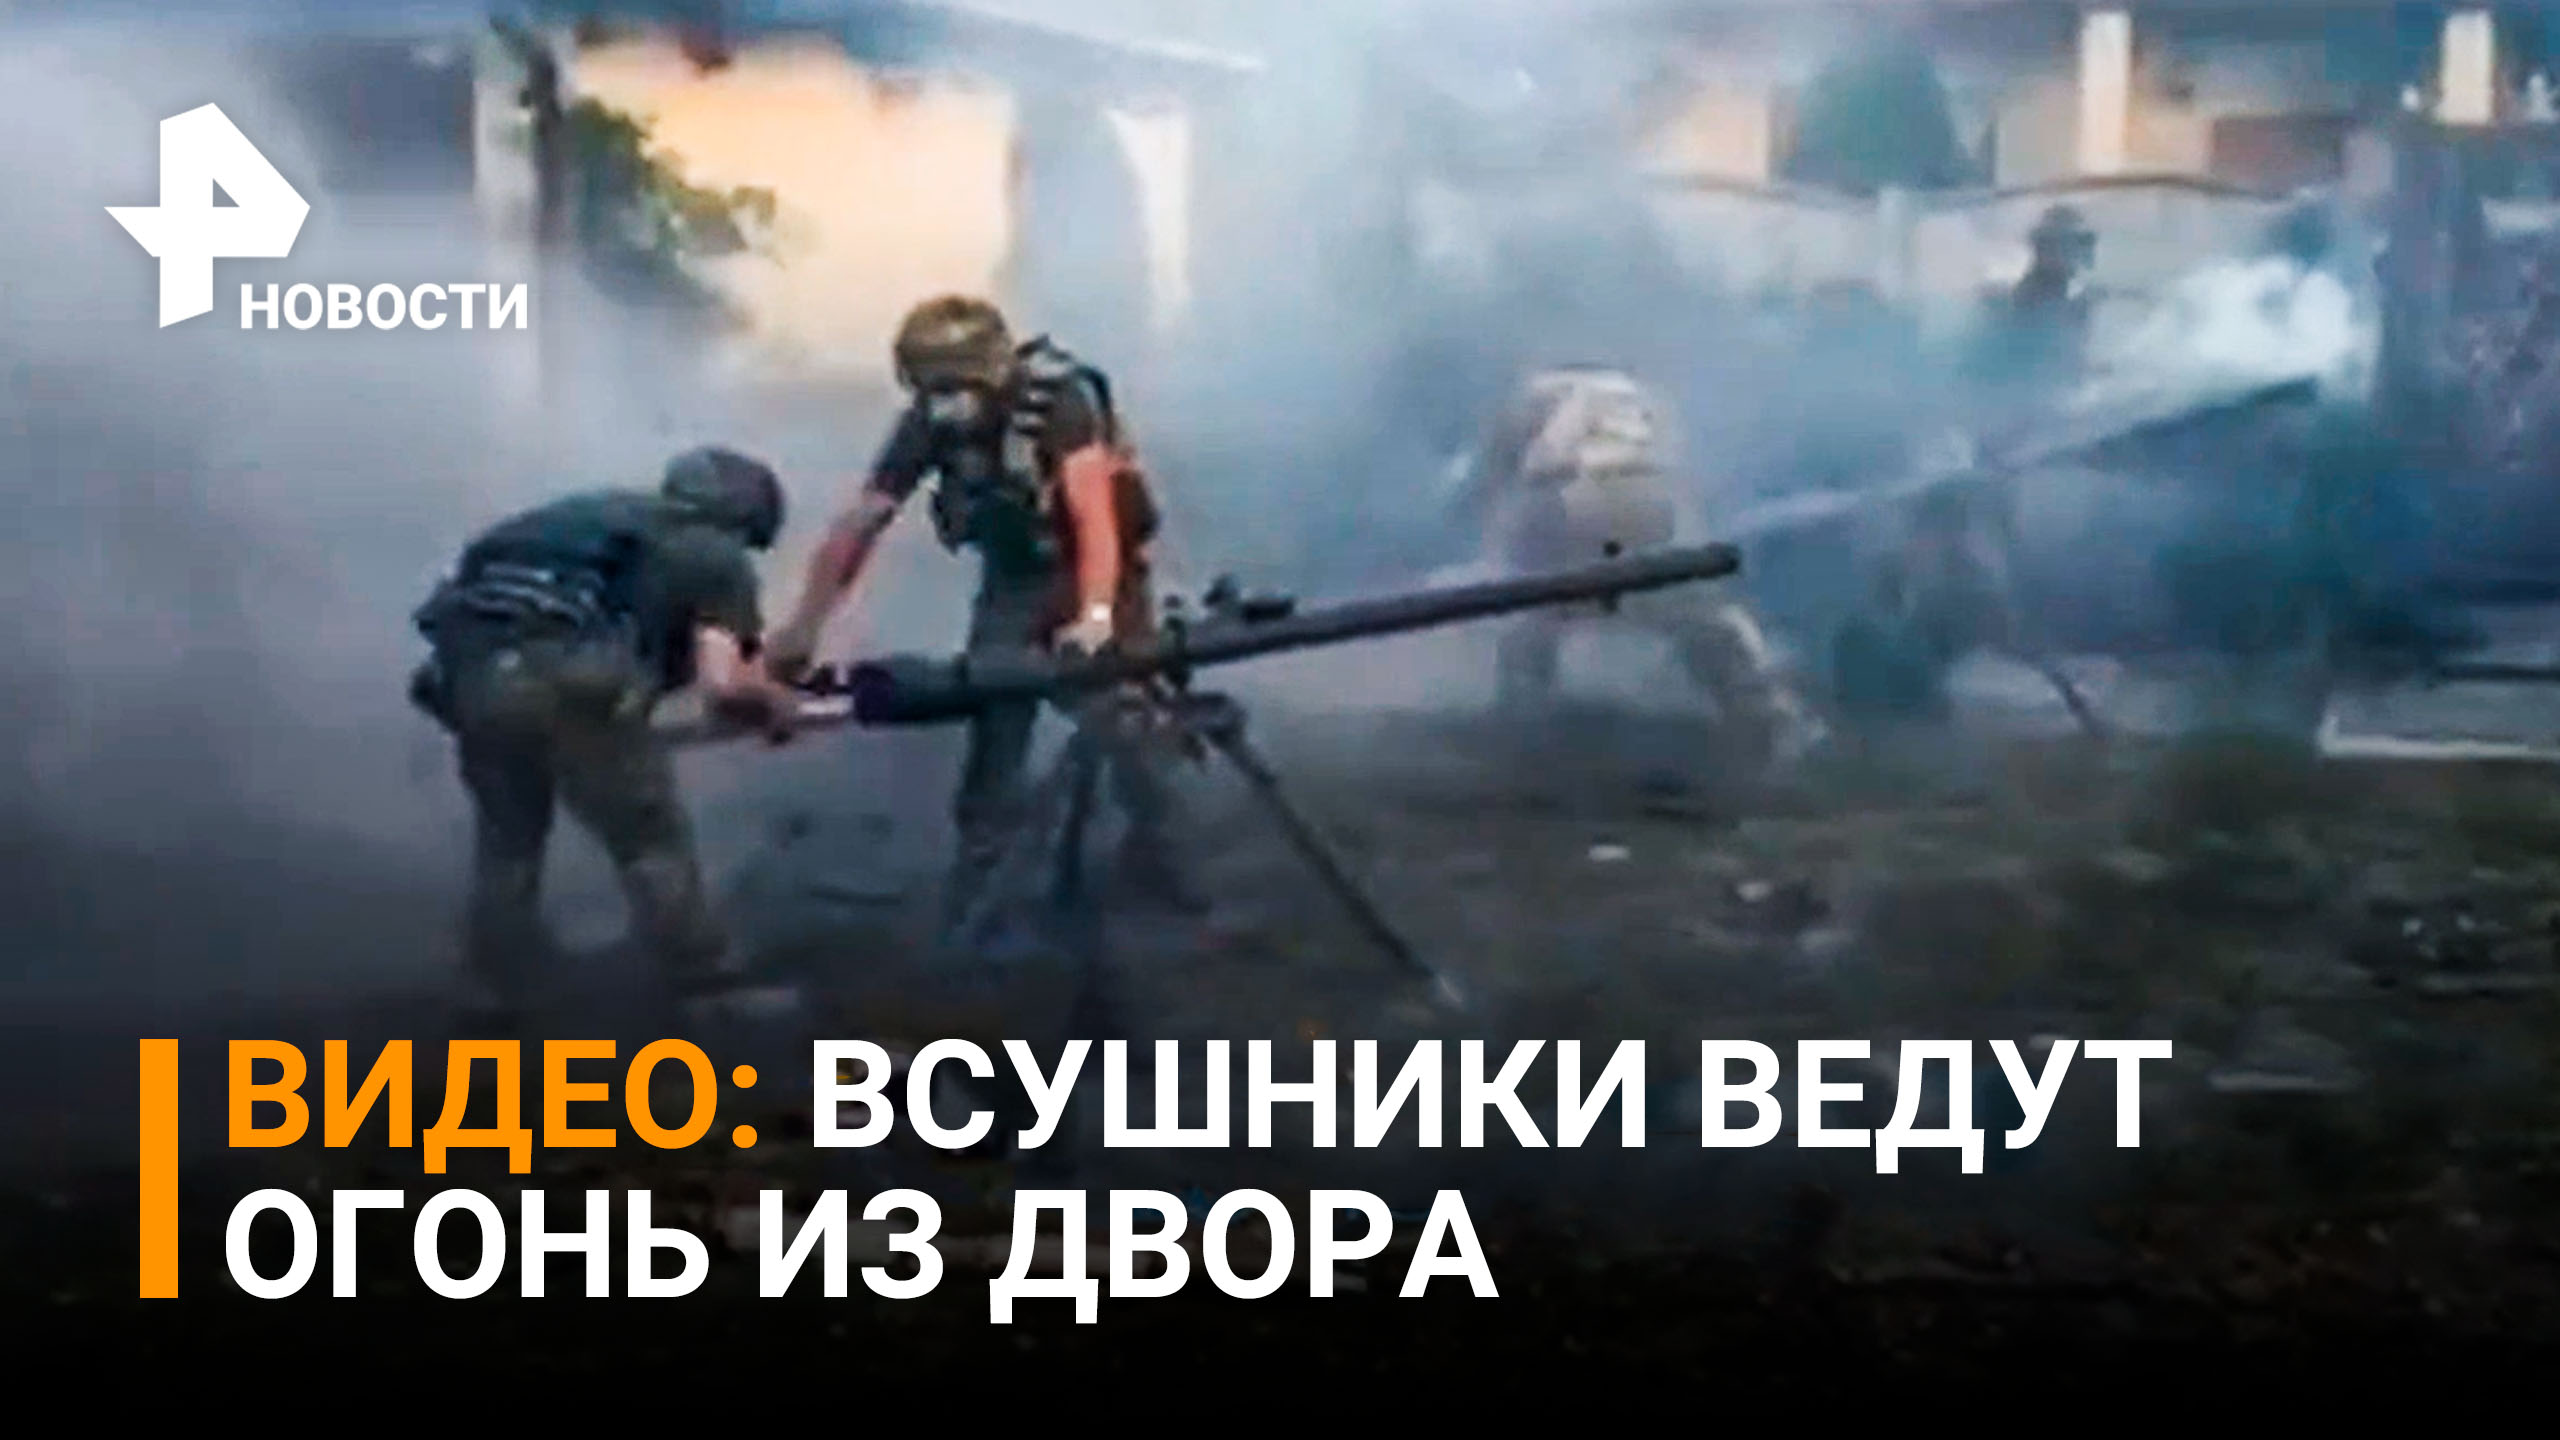 ВСУшники ведут огонь перед жилым домом / РЕН Новости